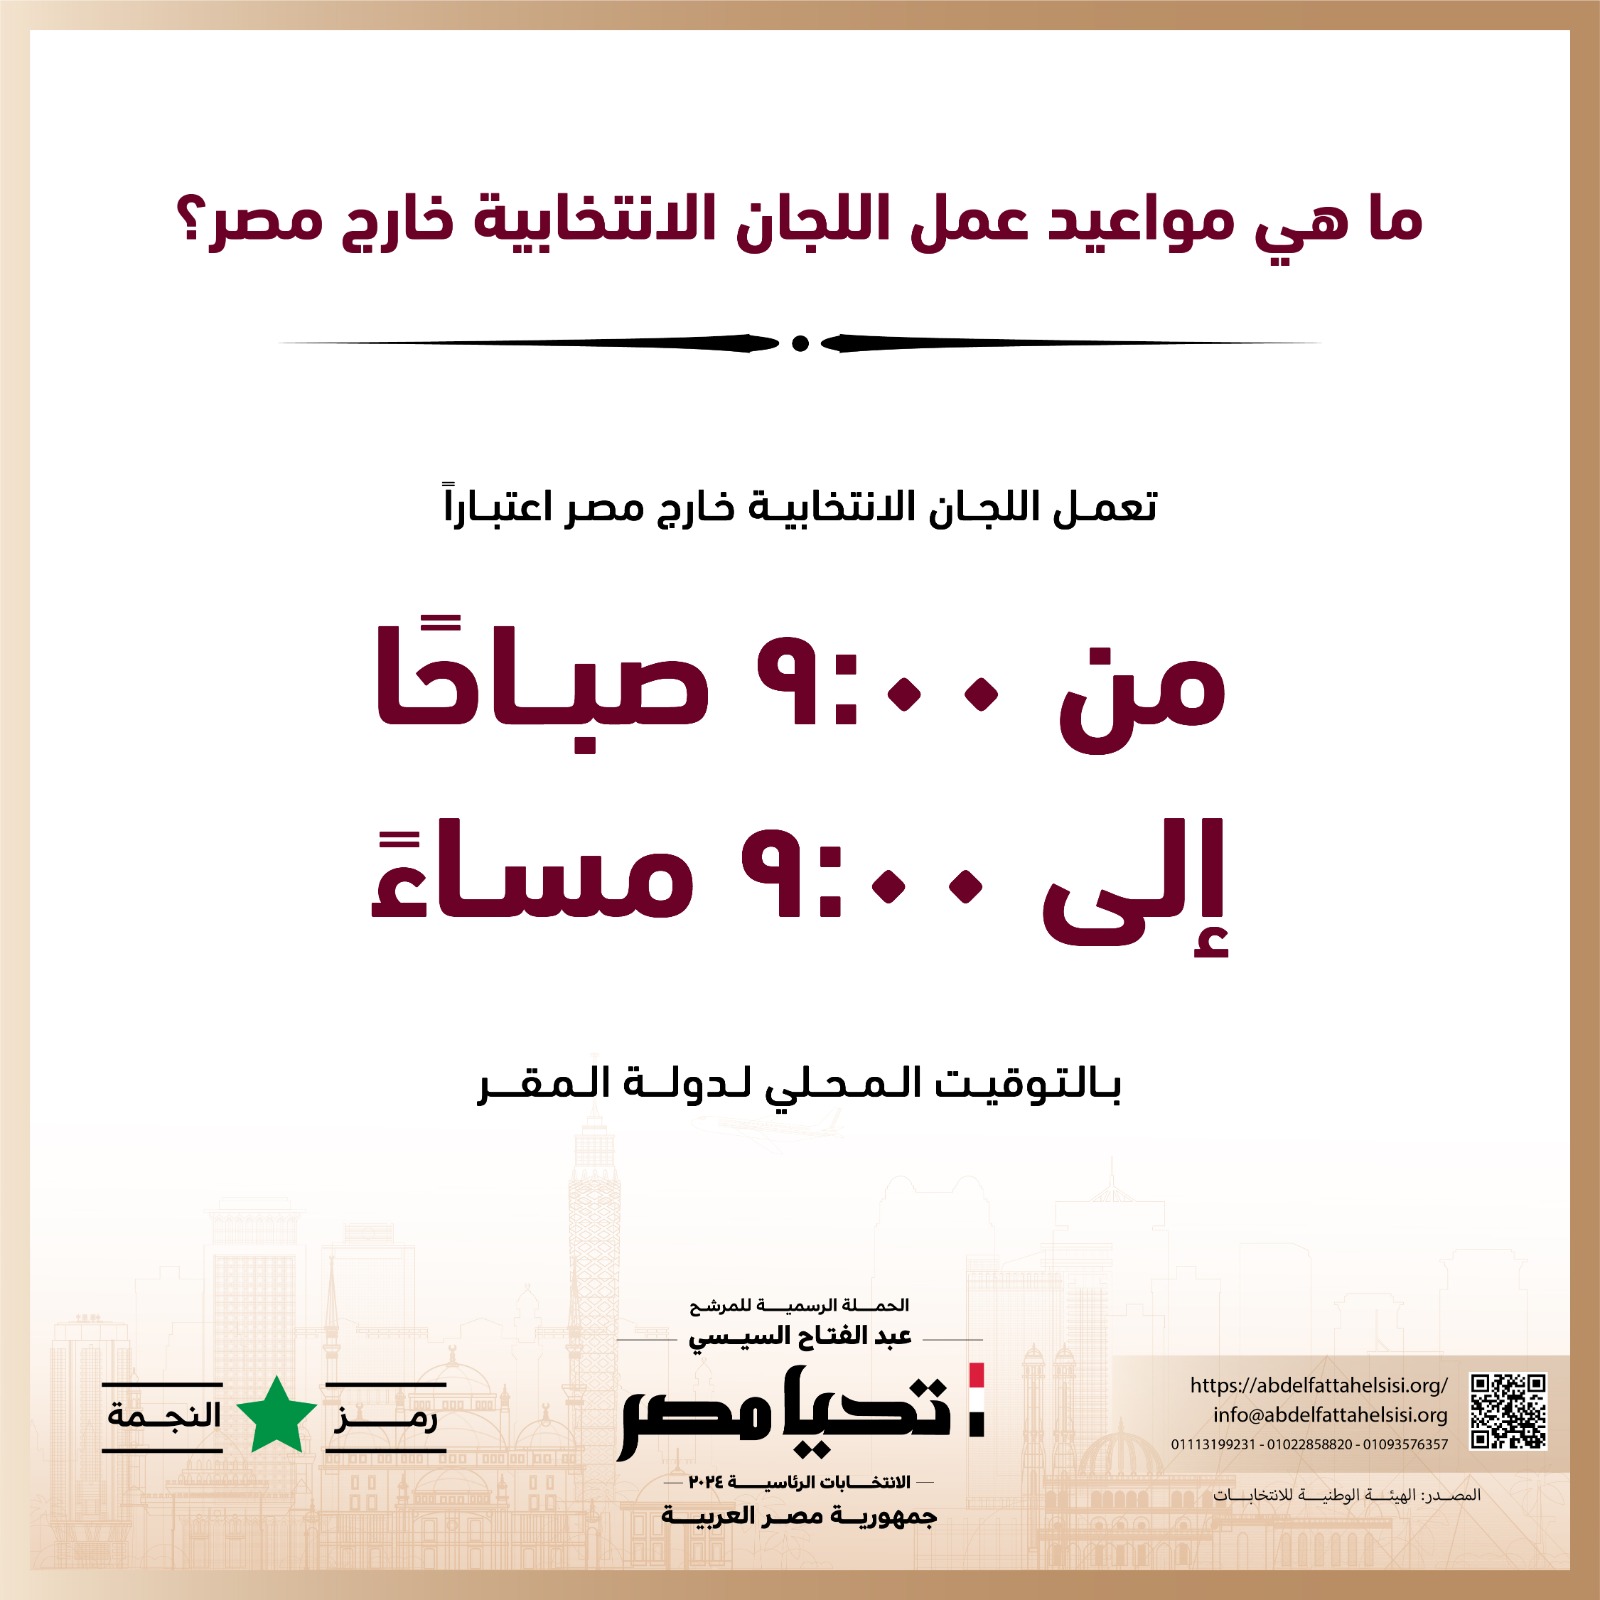 الحملة الرسمية للمرشح عبد الفتاح السيسي  (12)